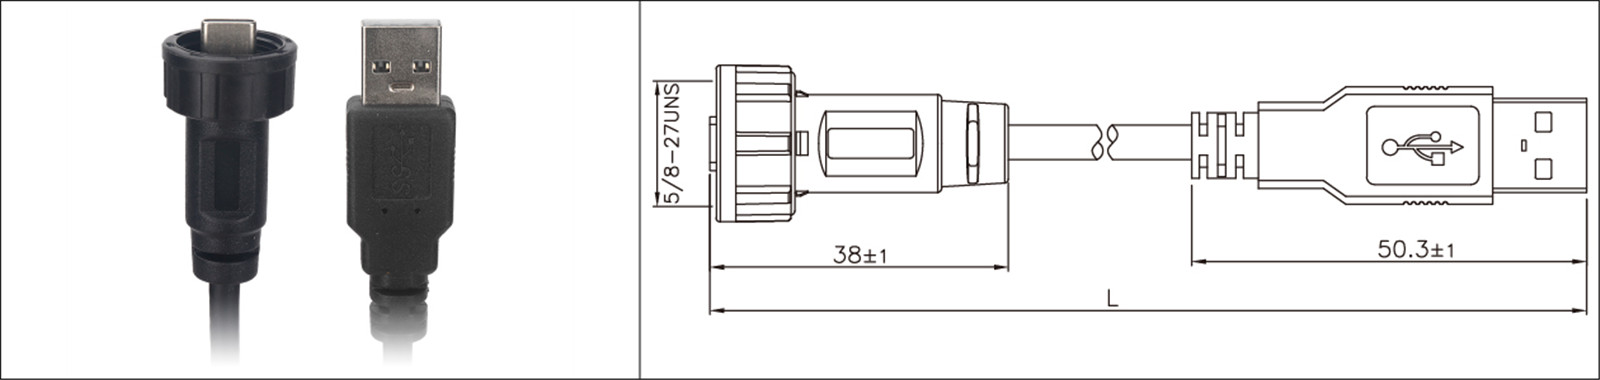 Βάση πάνελ Micro USB τύπου 2.0 3.0 θηλυκό και αρσενικό αδιάβροχο IP67 overmold καλώδιο επέκτασης βιομηχανική σύνδεση-02 (8)